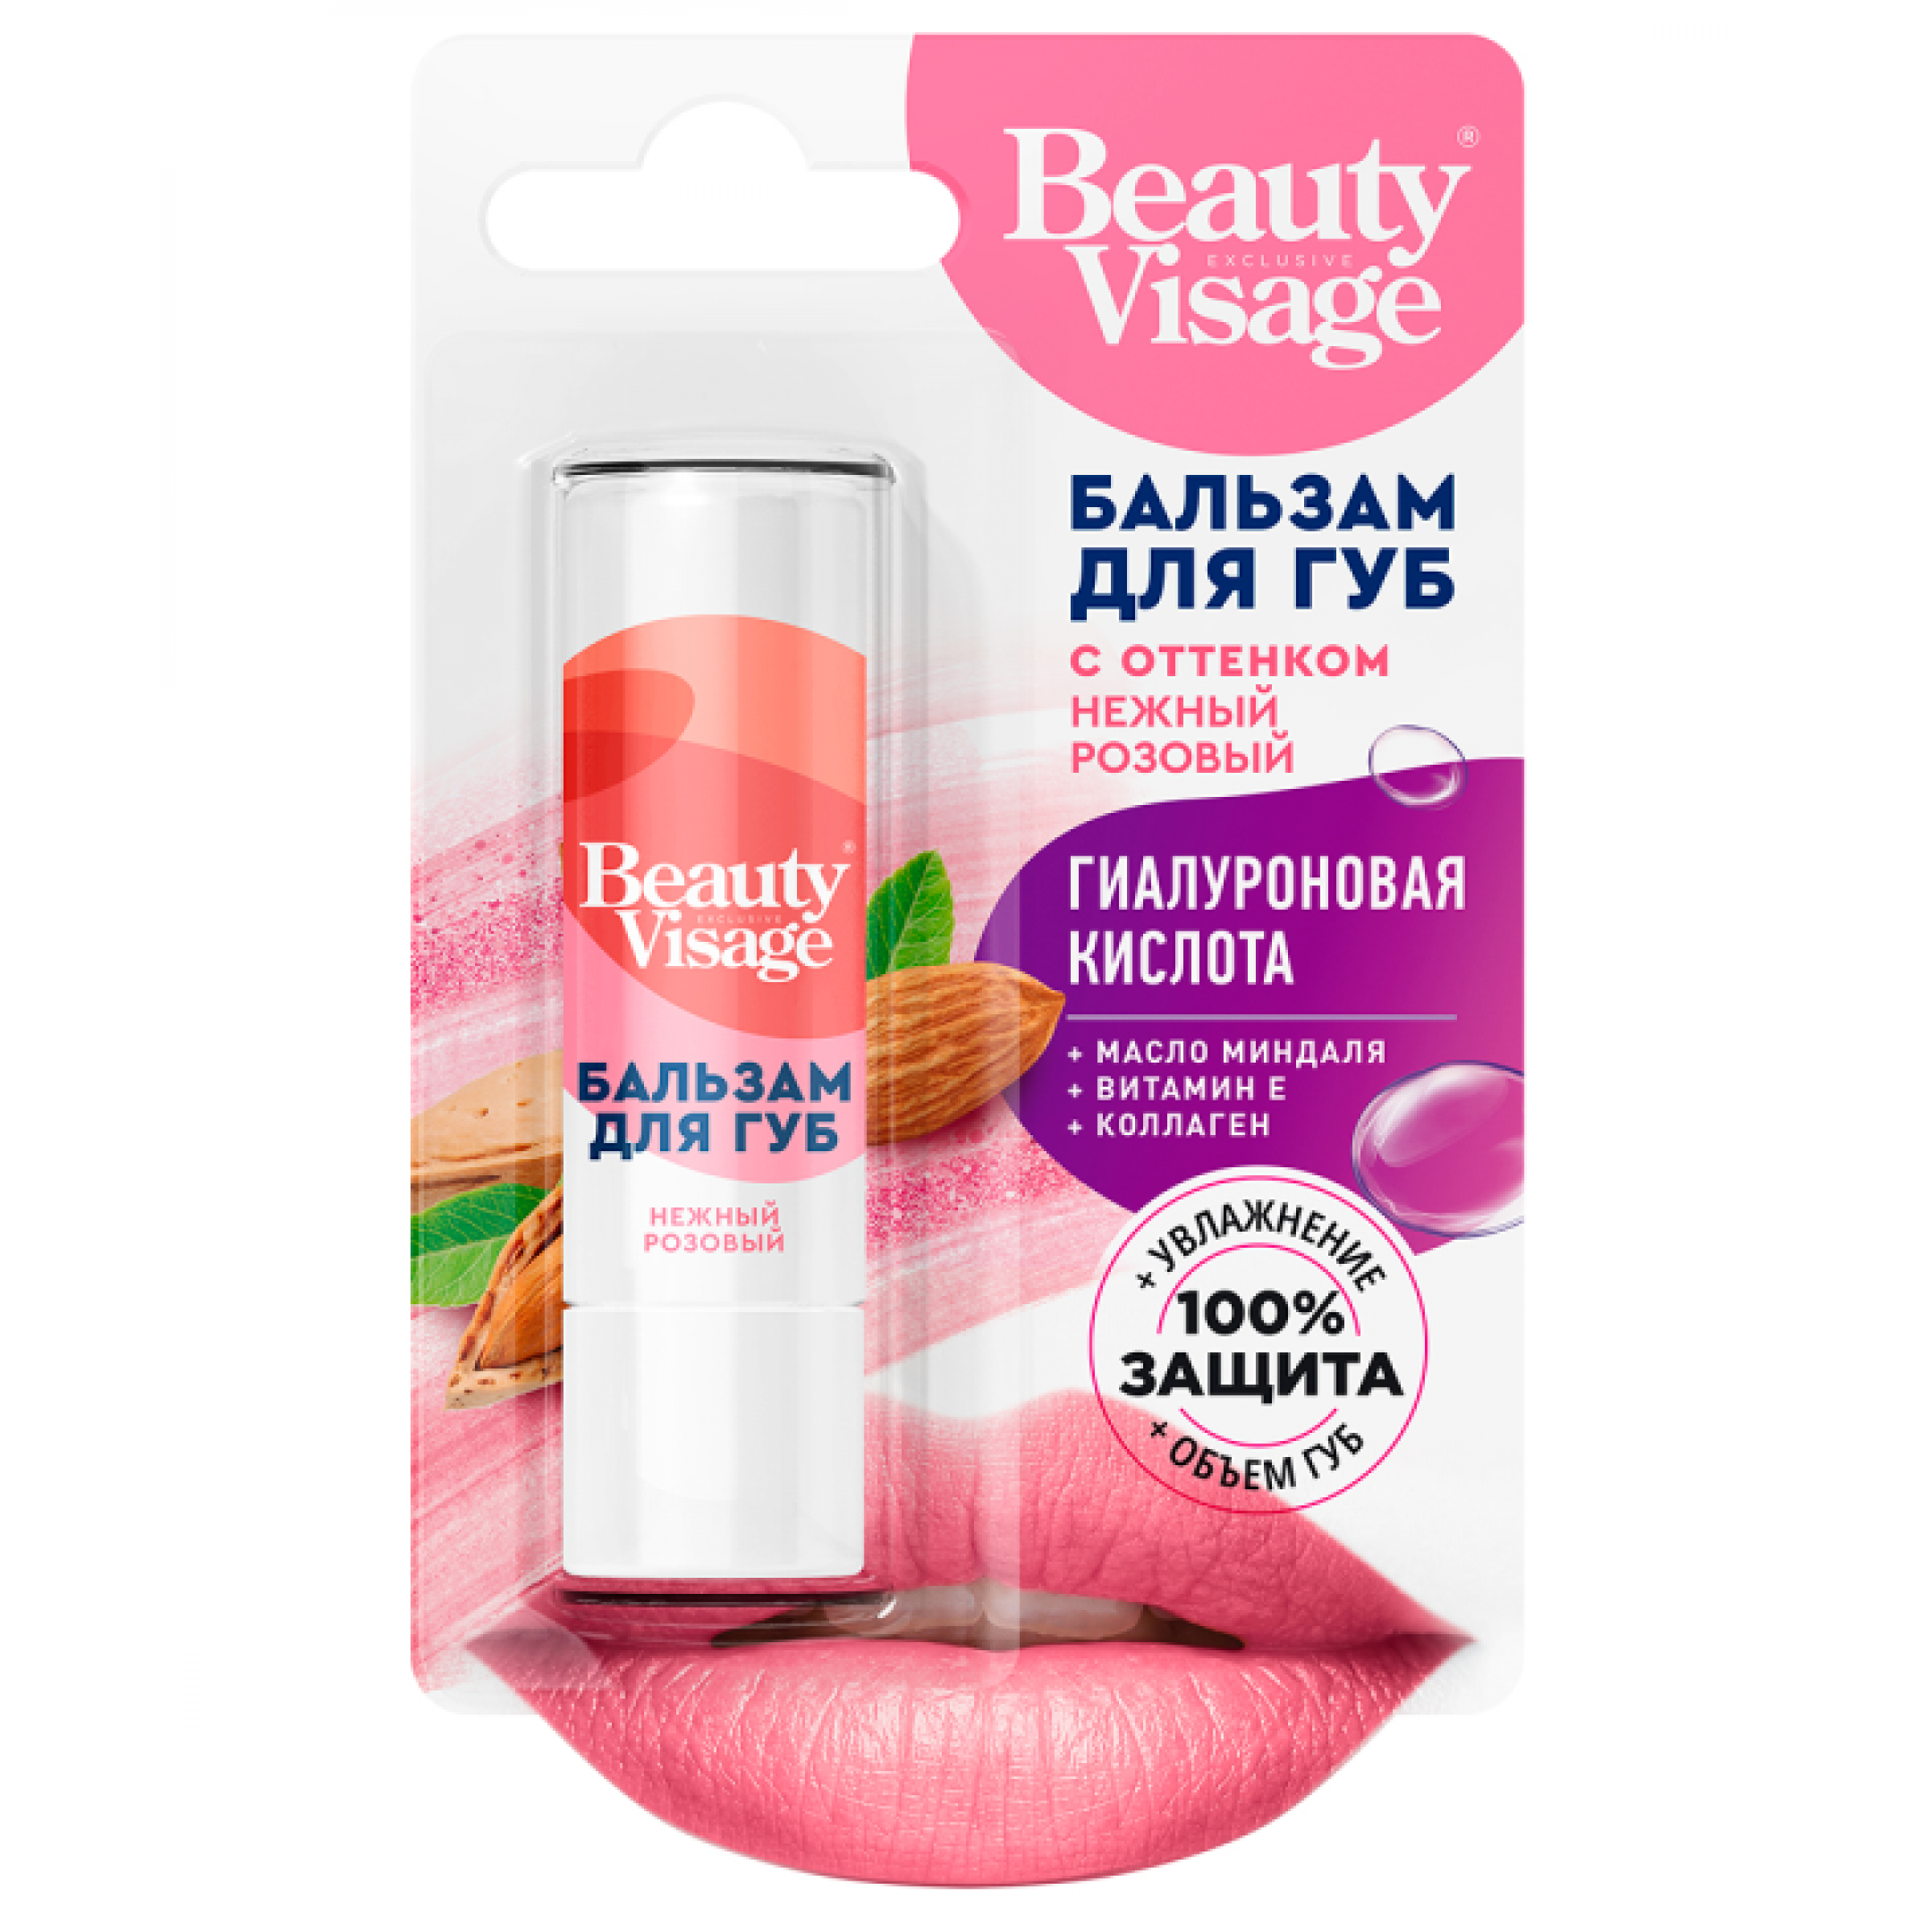 Бальзам для губ нежно-розовый оттенок Beauty Visage, 1 шт